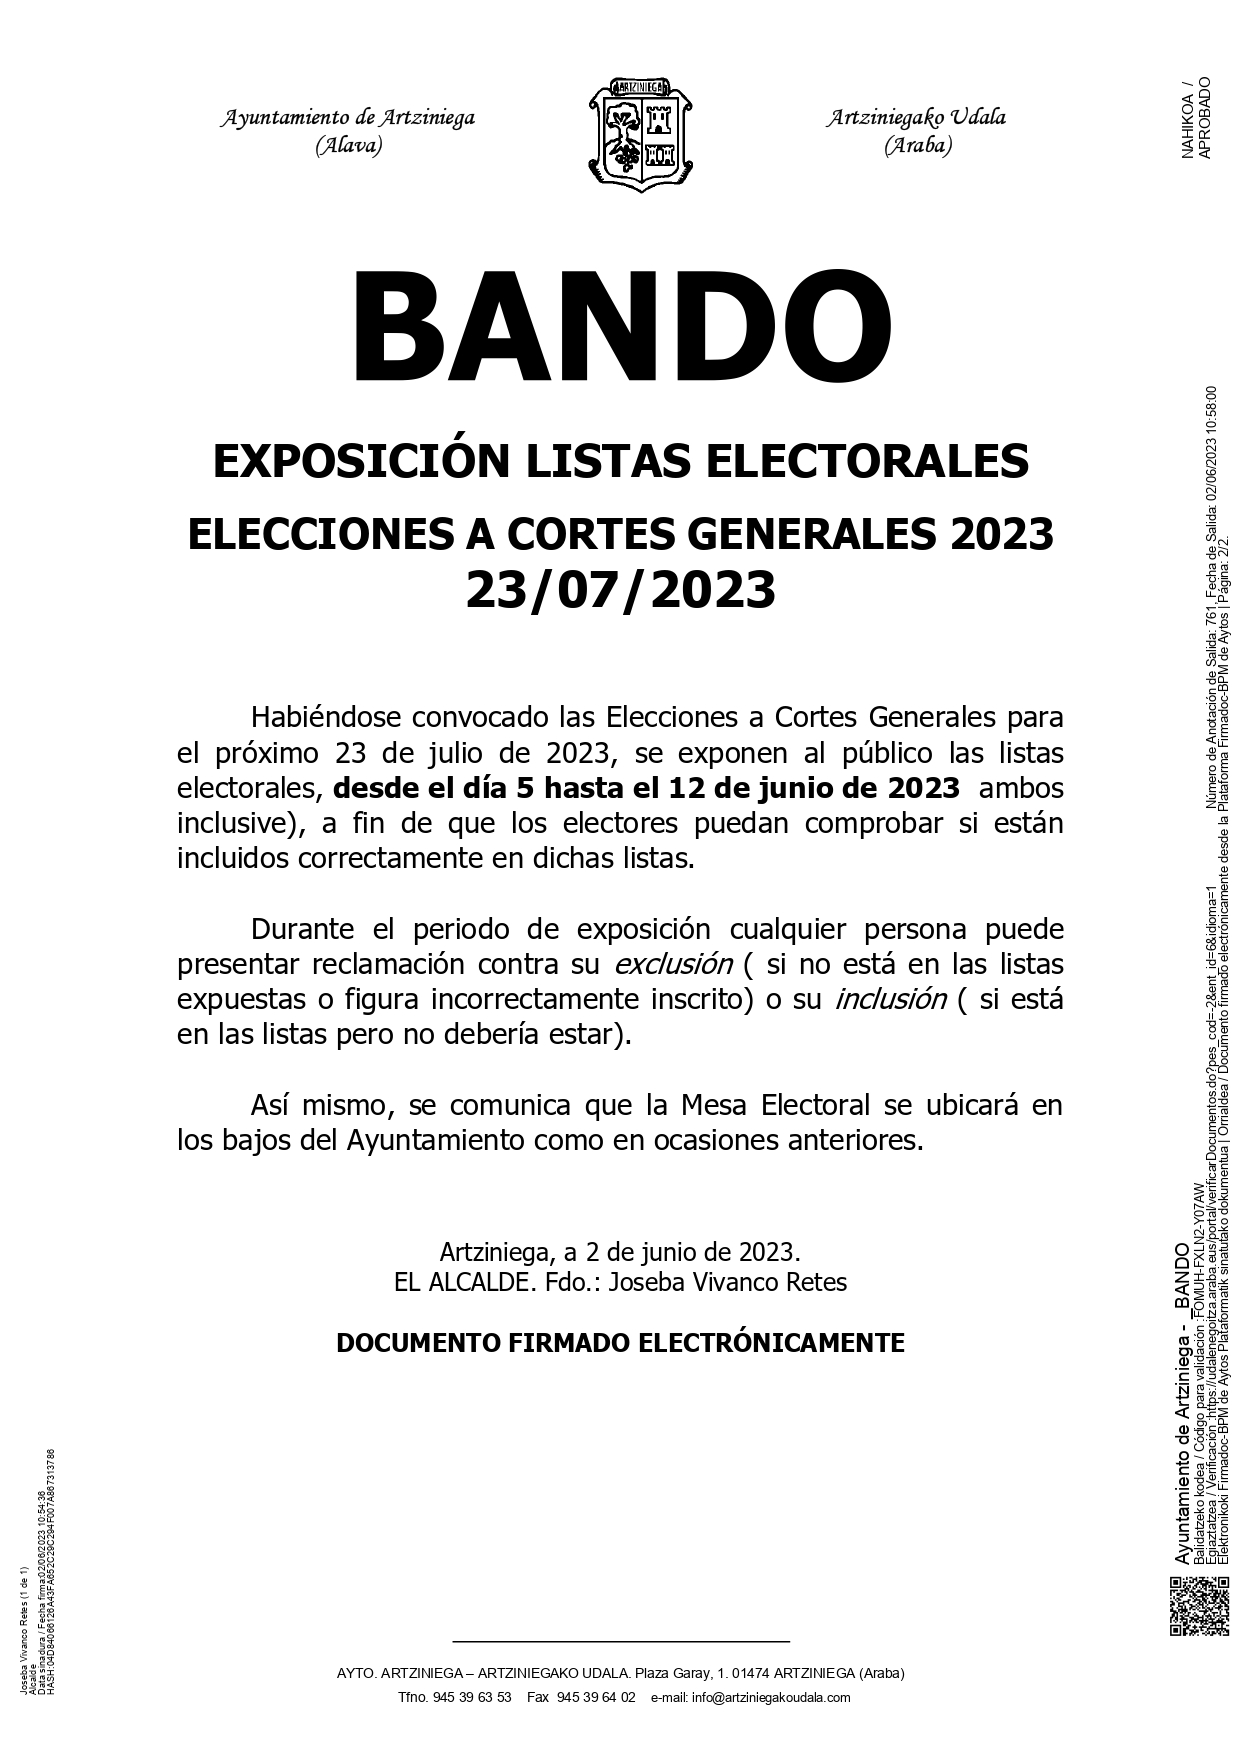 BANDO: EXPOSICIÓN LISTAS ELECTORALES ELECCIONES A CORTES GENERALES 2023 23/07/2023